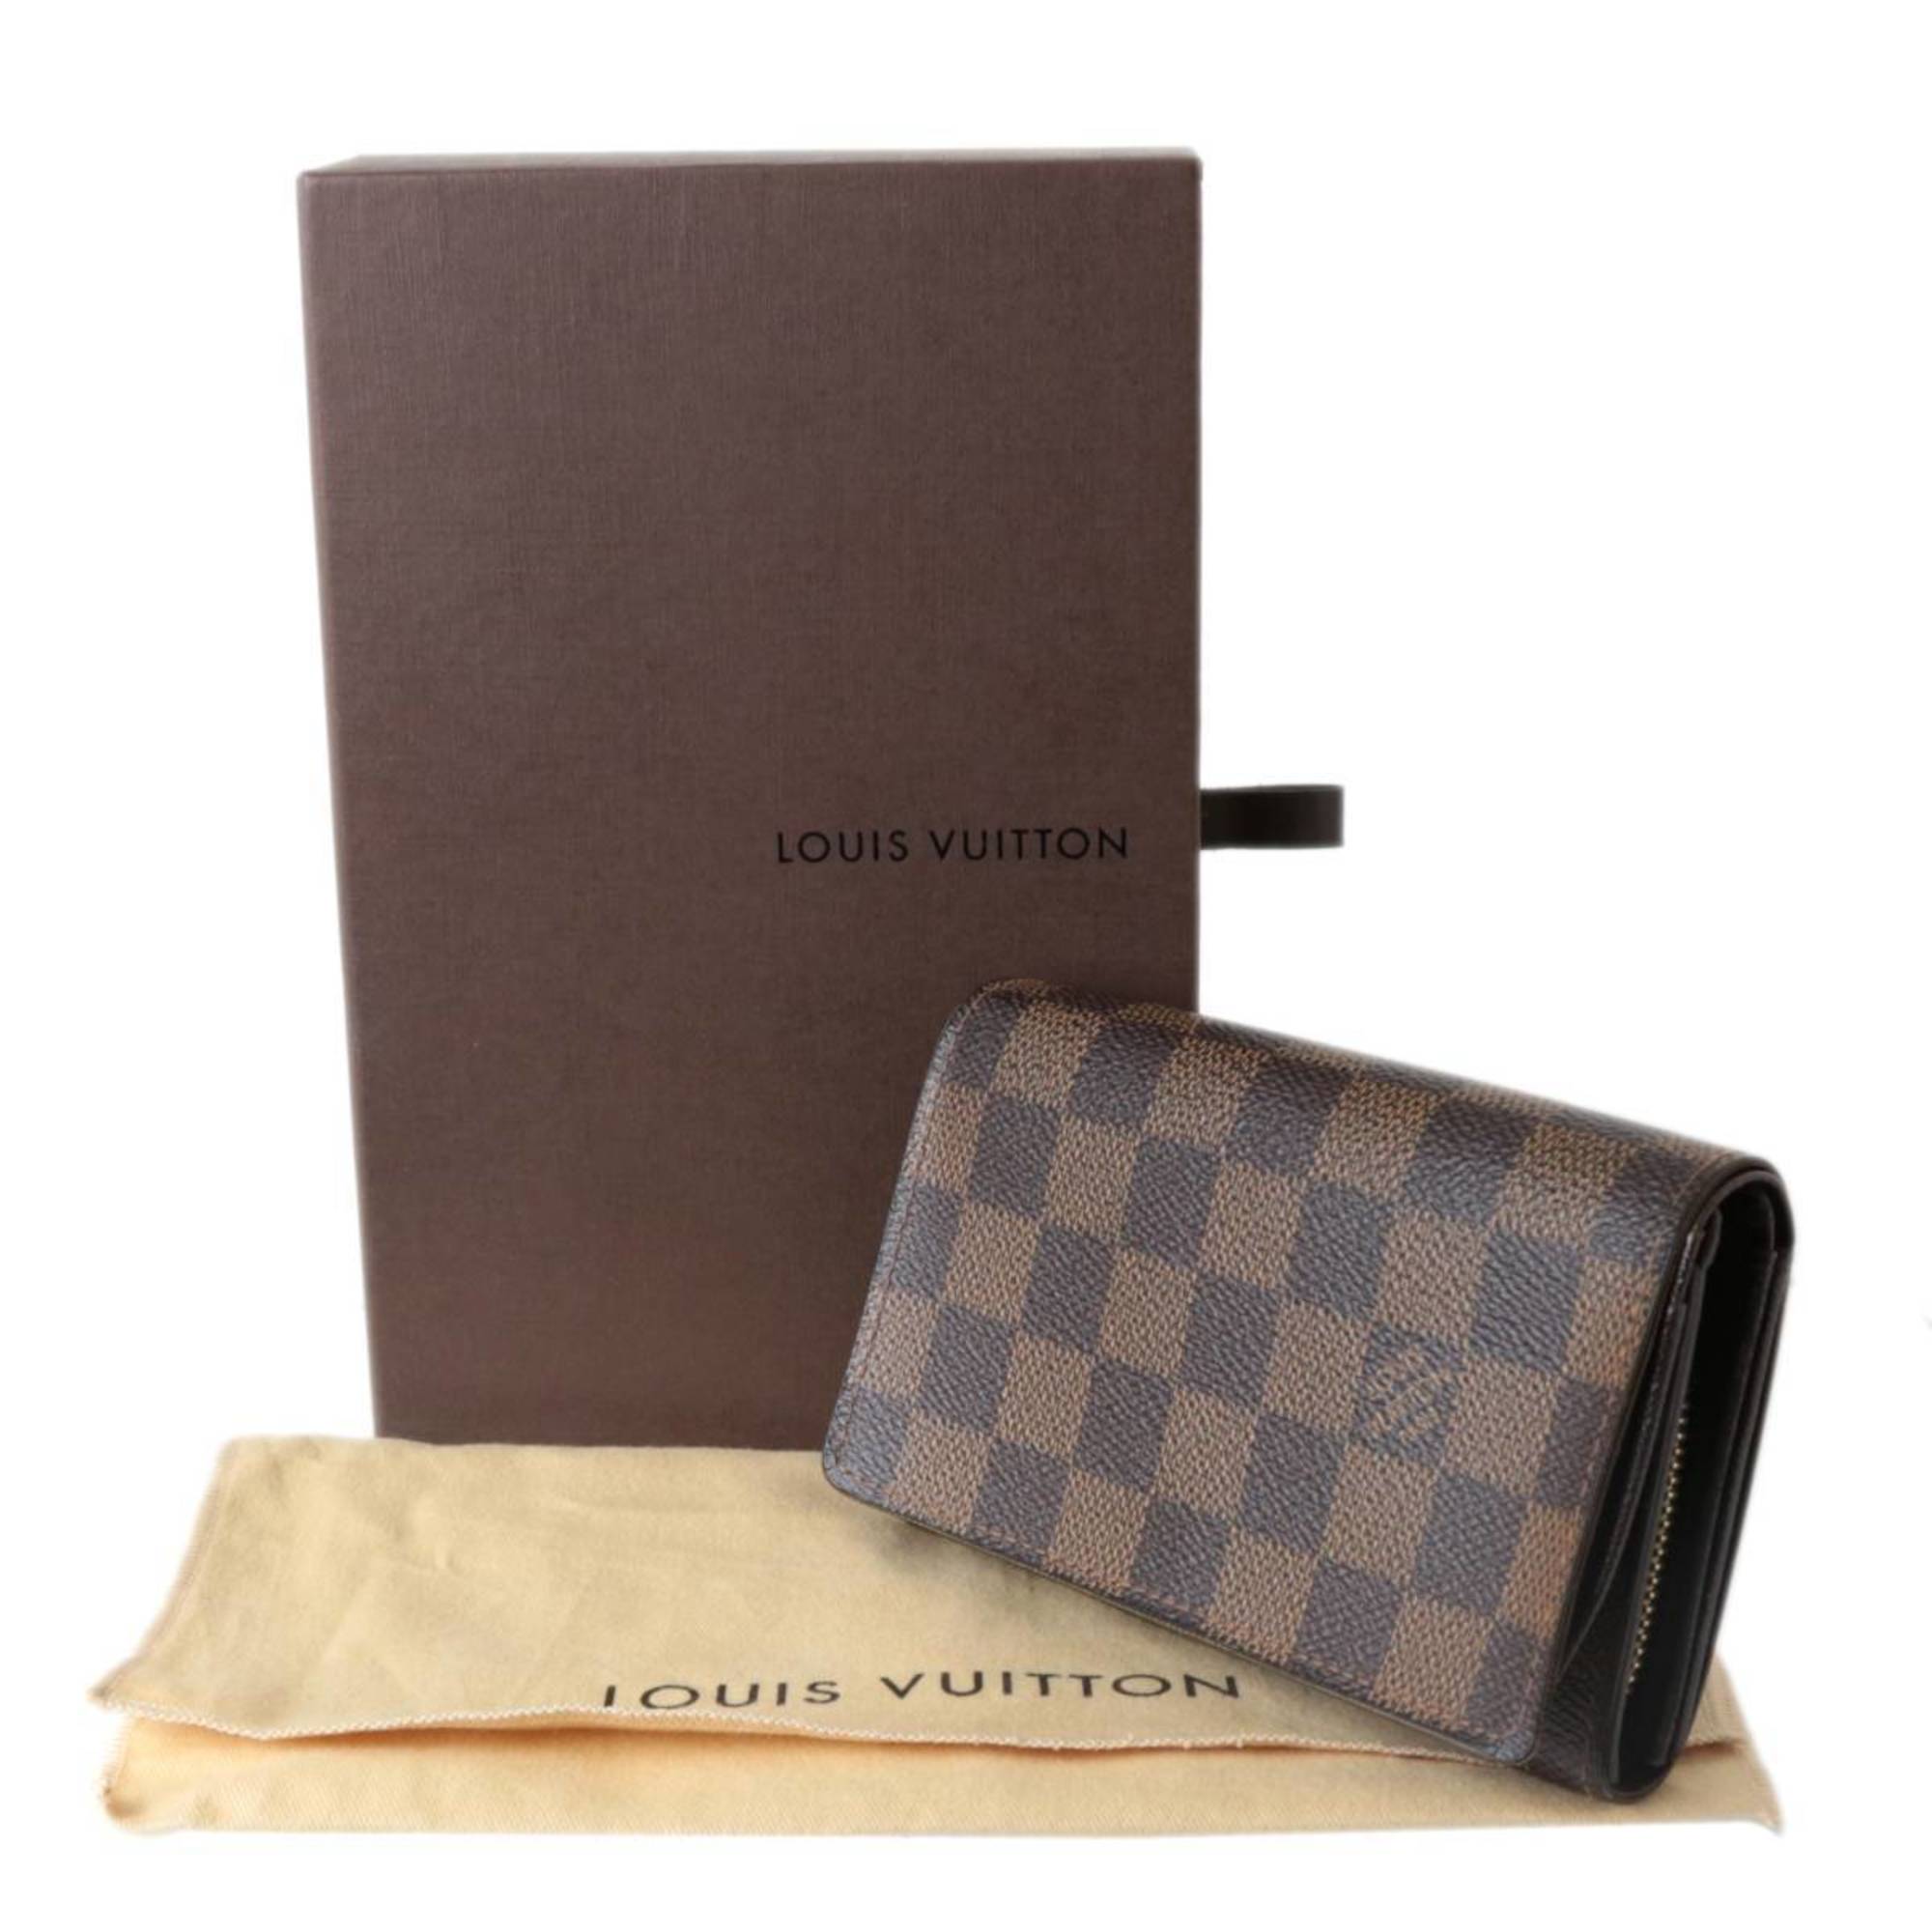 Louis Vuitton Empreinte Portefeuille Curieuse wallet  Good or Bag